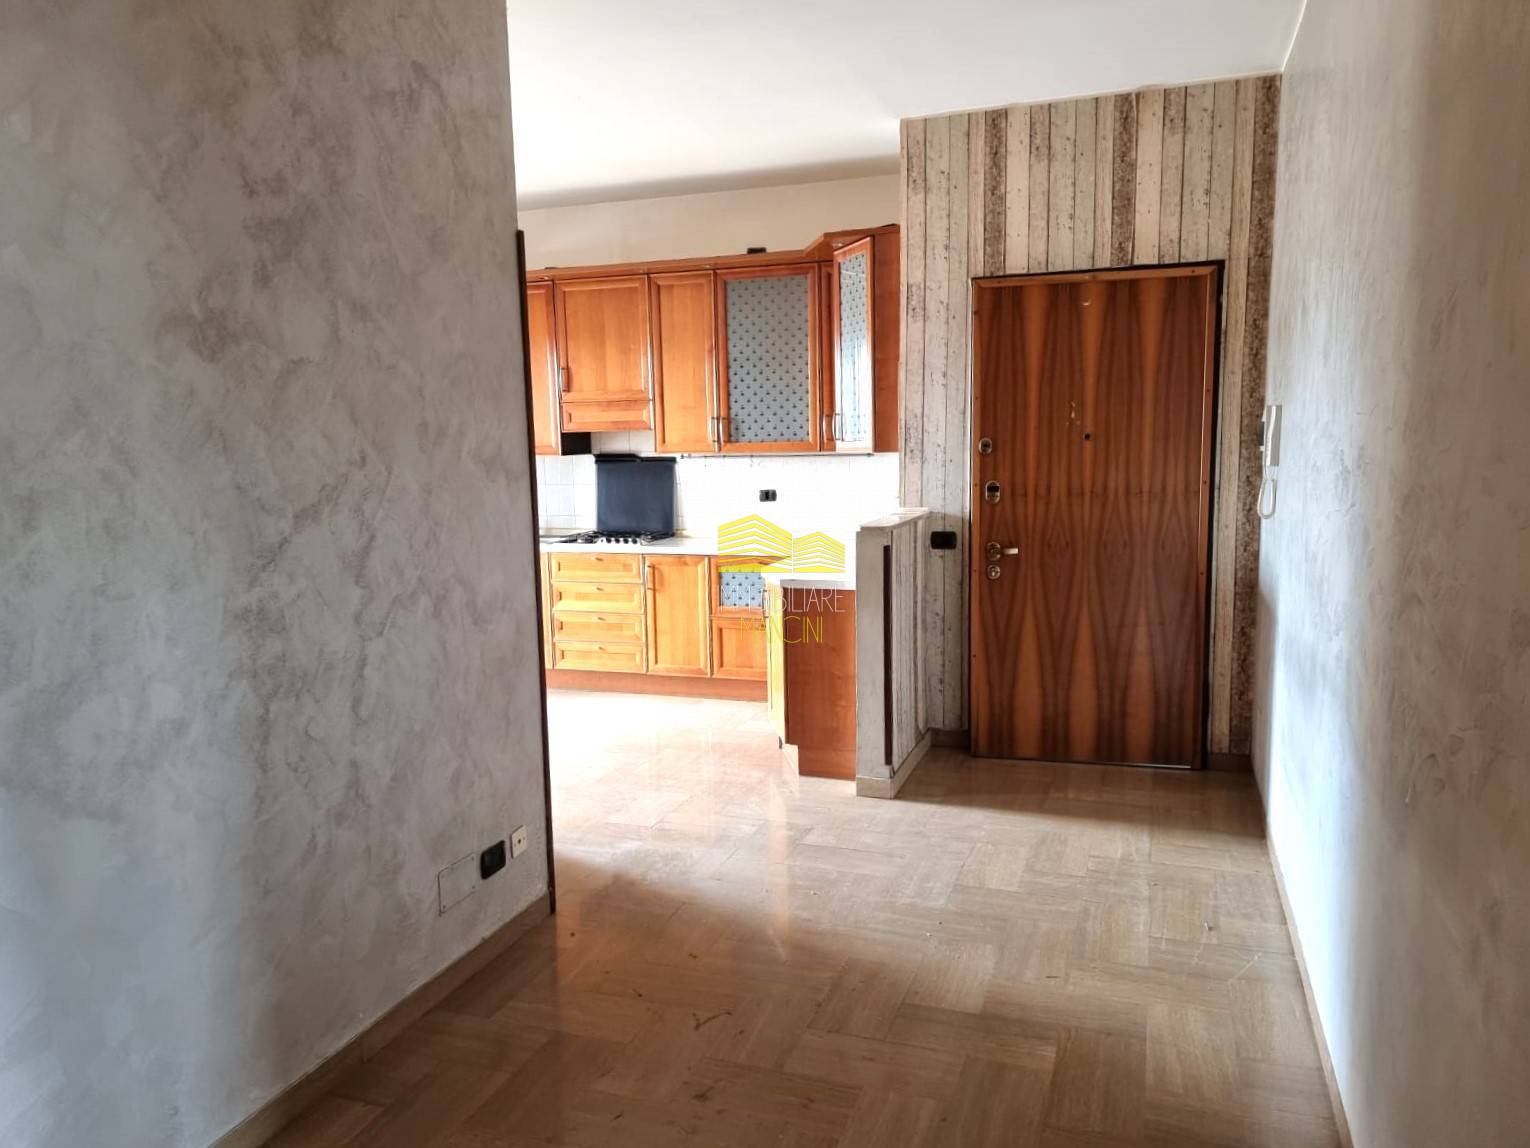 Appartamento in vendita a Bonate Sotto, 3 locali, prezzo € 80.000 | PortaleAgenzieImmobiliari.it